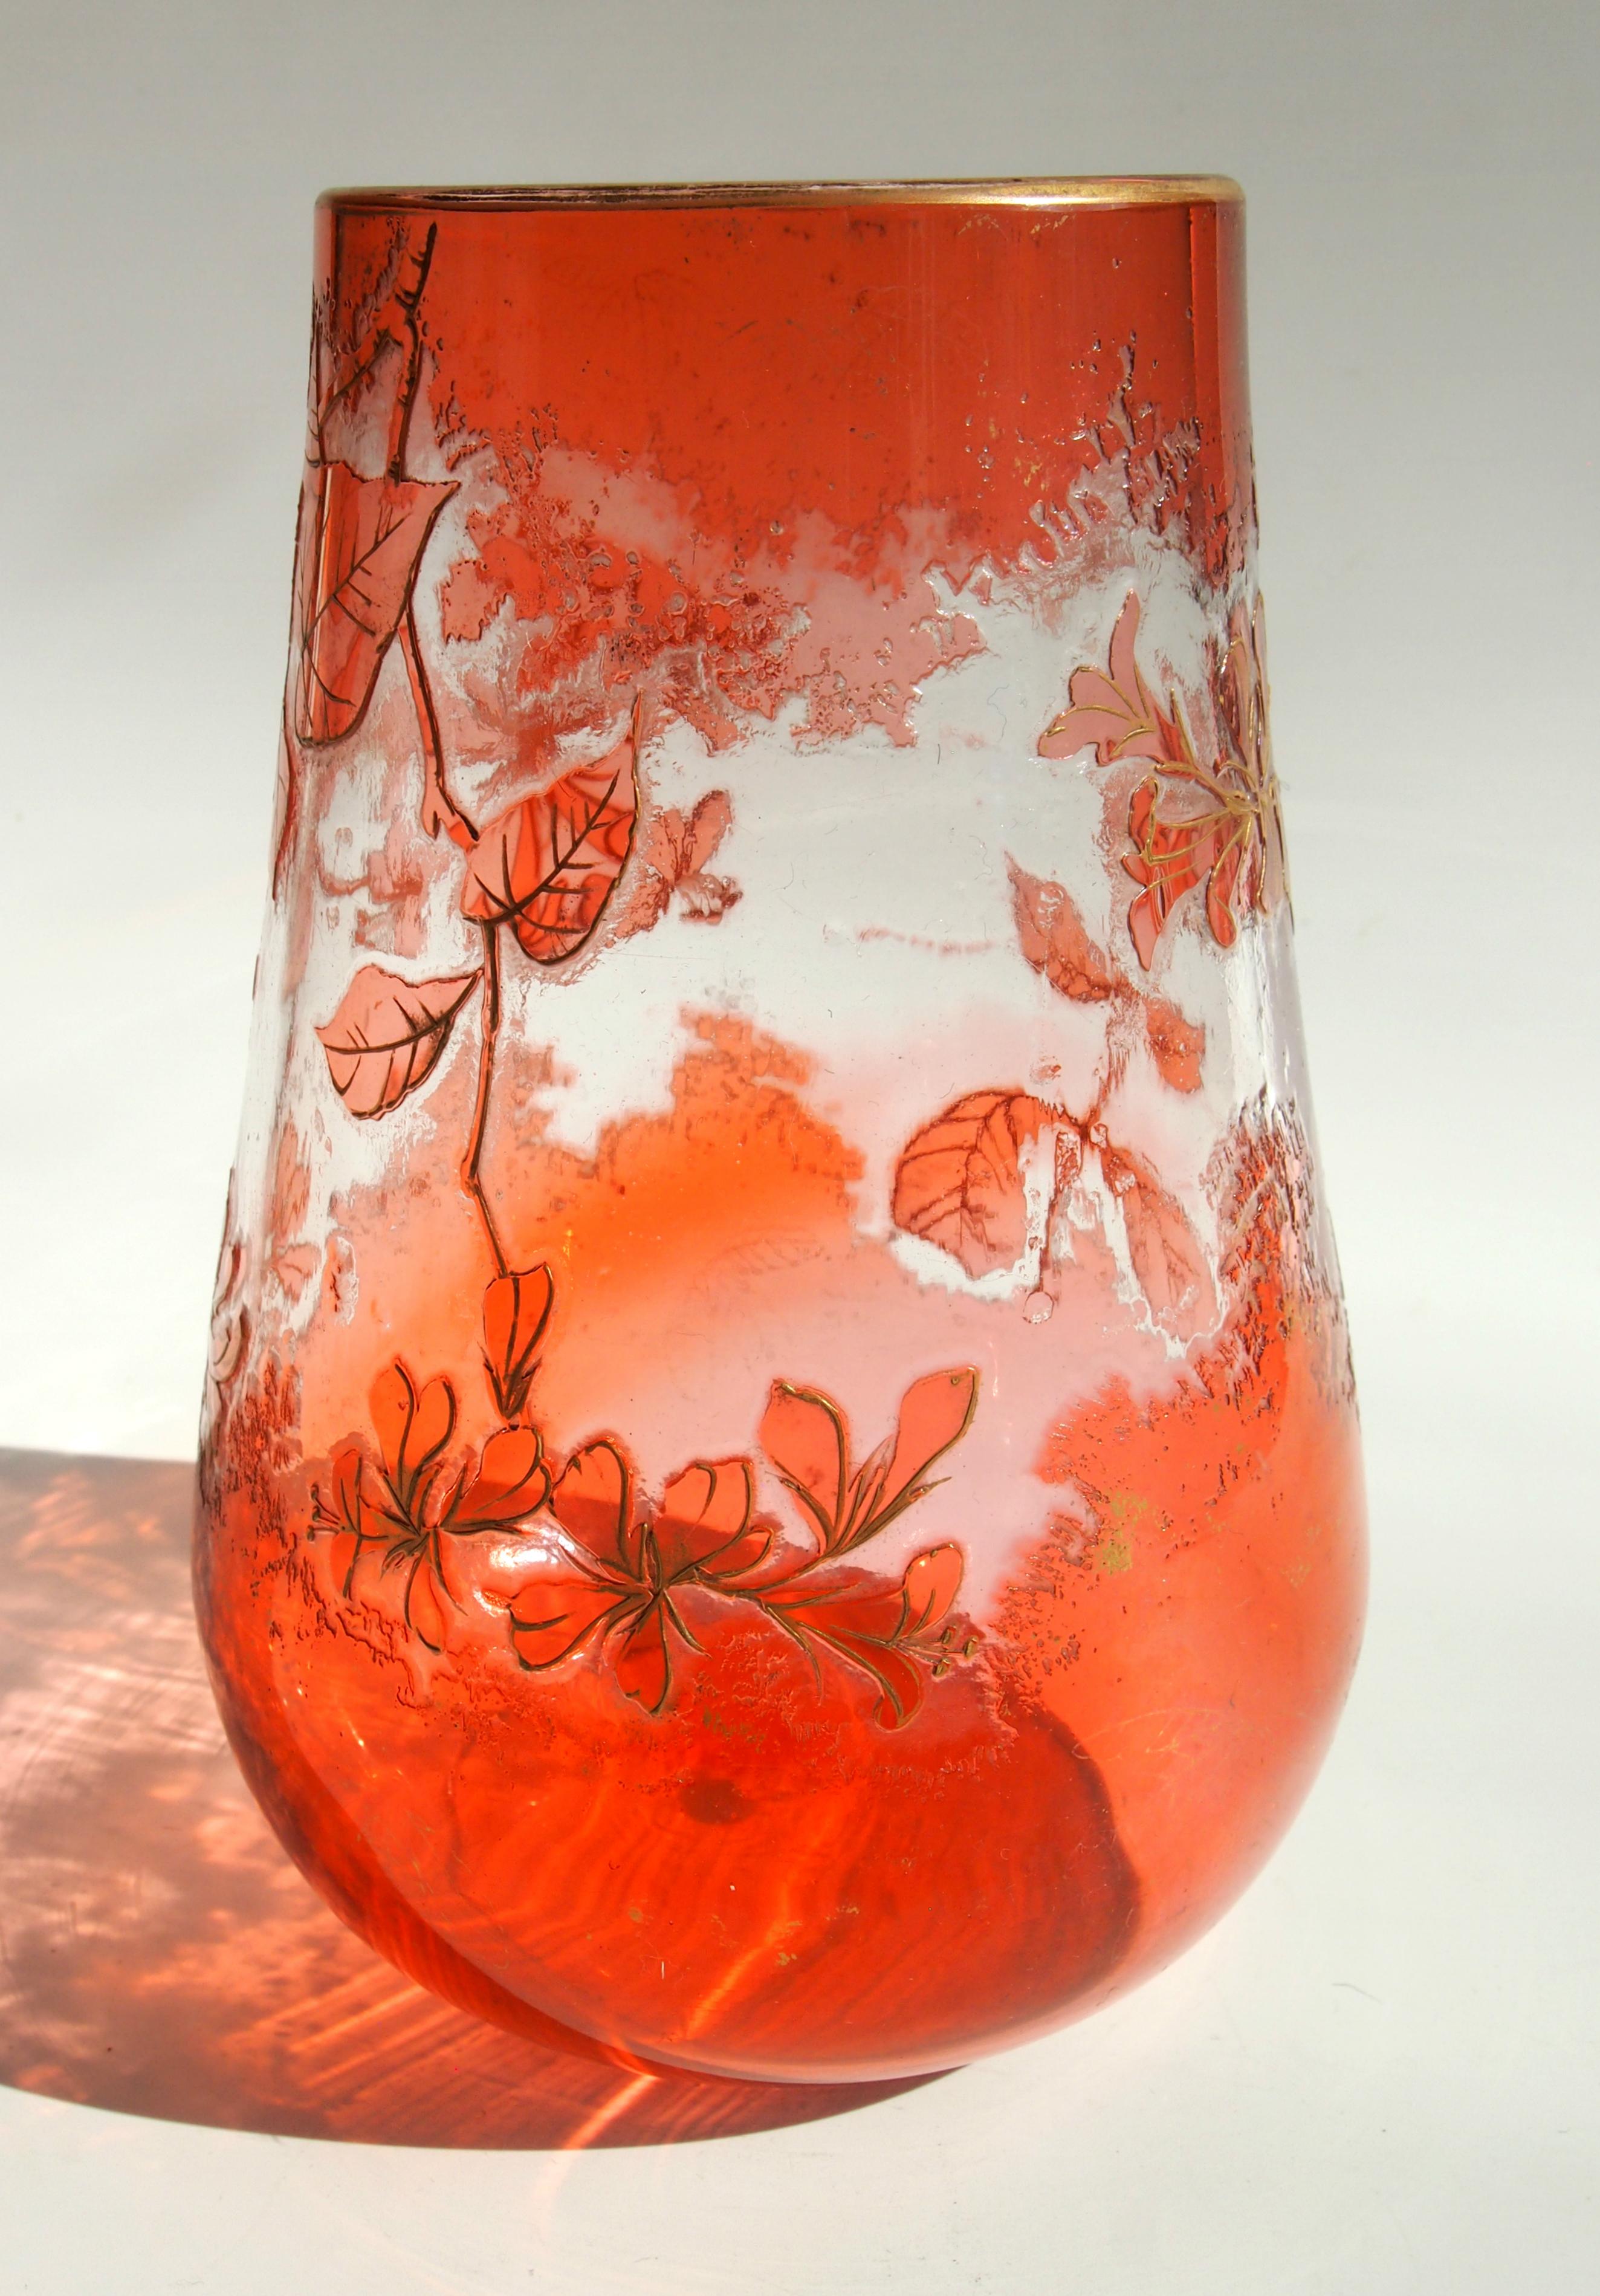 Un vase camée Harrach orange/rose sur fond clair de style Art Nouveau. Représentation de fleurs rehaussée de dorures. Ce style de camée a été présenté par Harrach à l'exposition de Paris en 1900. Leur technique de camée stylisée utilise un effet de